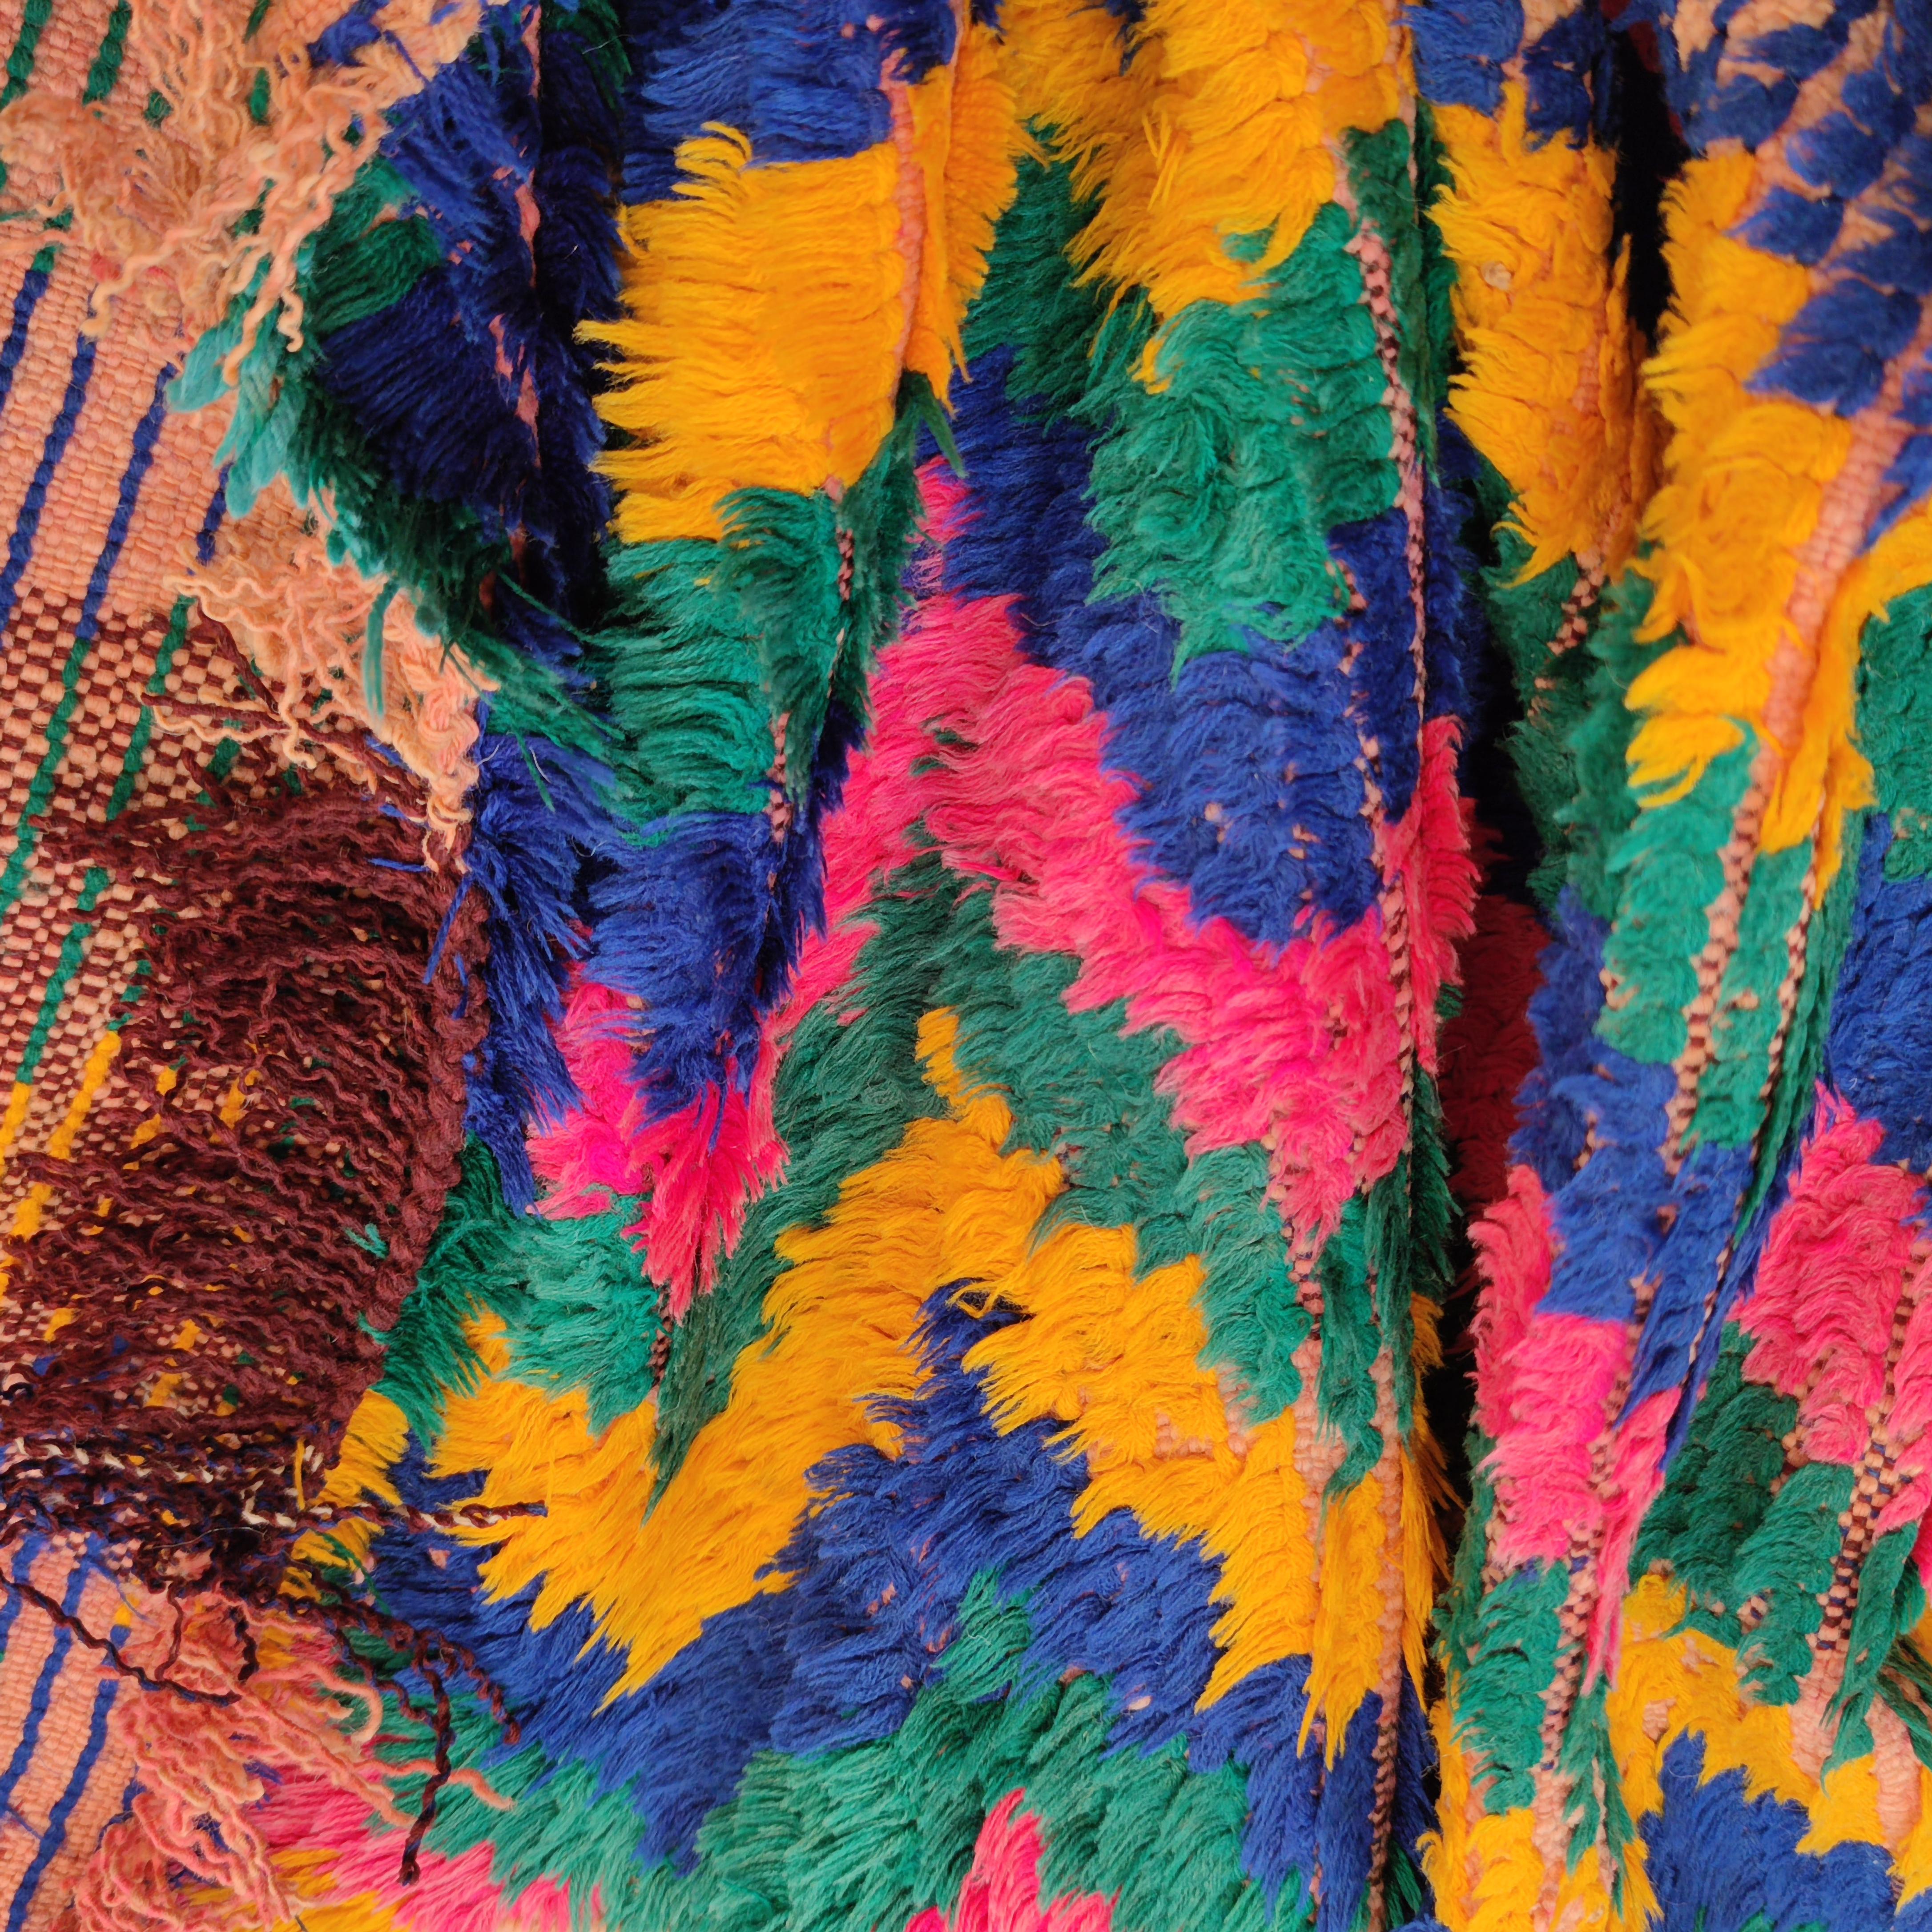 Ein sehr ungewöhnlicher Azilal-Teppich mit einem langen und schmalen Format, das die visuelle Wirkung des vielfarbigen, gewitterartigen Musters betont. Der Flor besteht vollständig aus Industriebaumwolle, wobei der Teppich auf einem Wollgrund liegt,